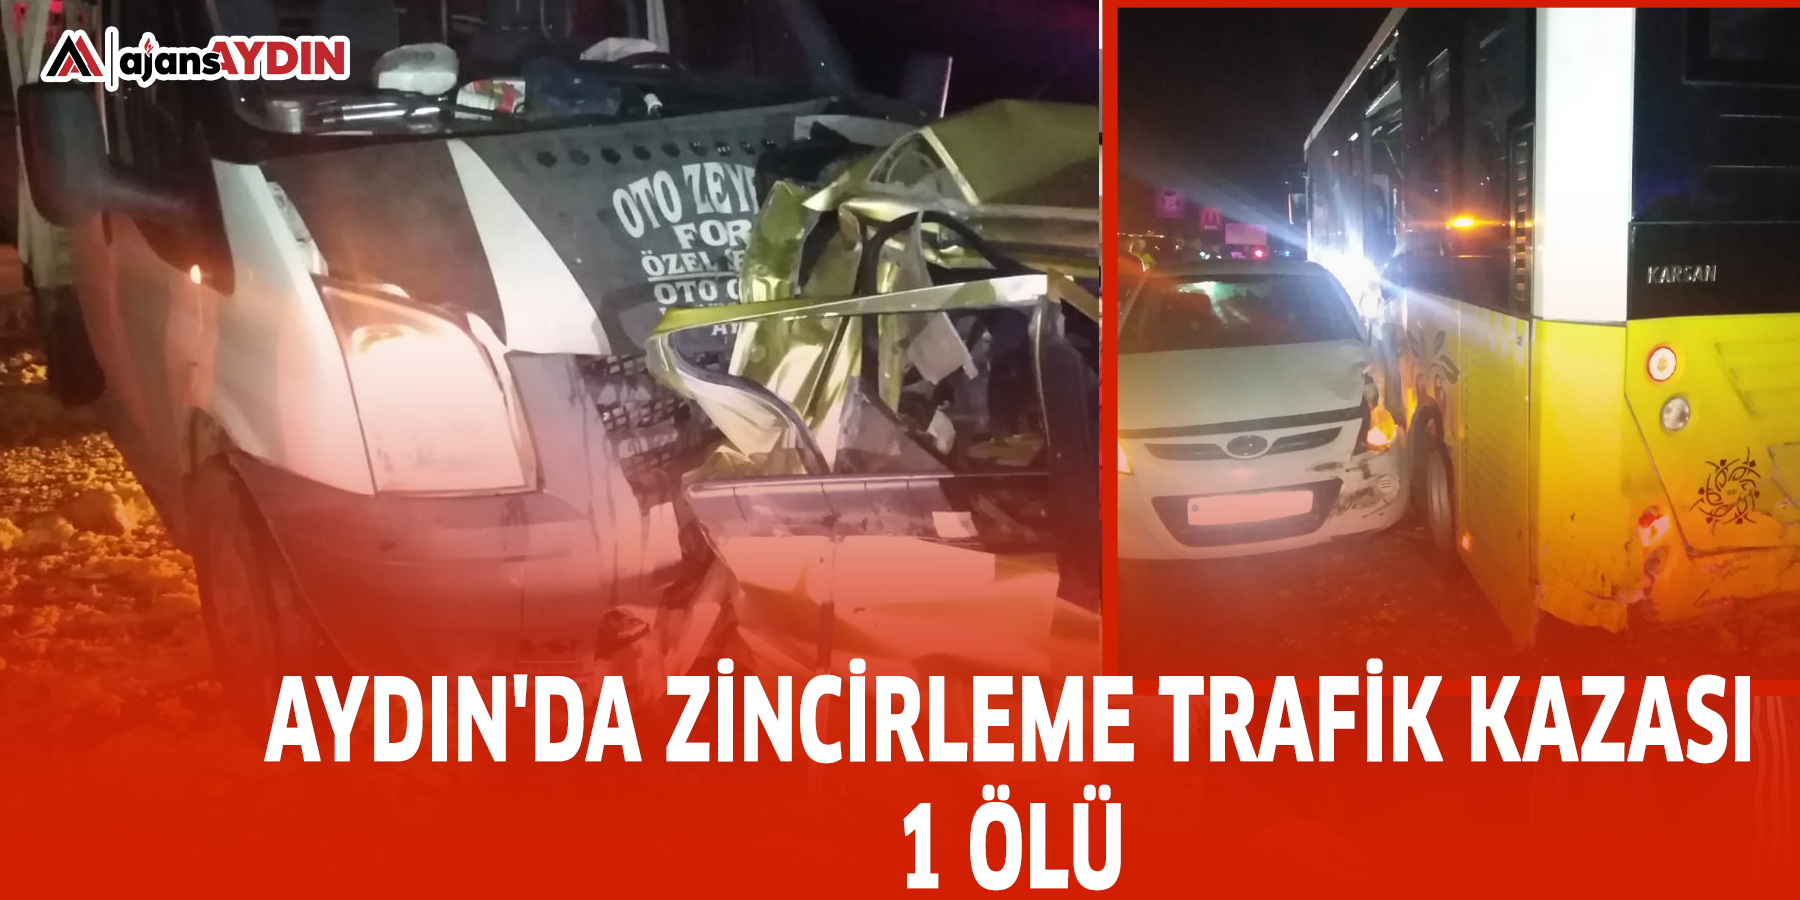 Aydın'da zincirleme trafik kazası 1 ölü